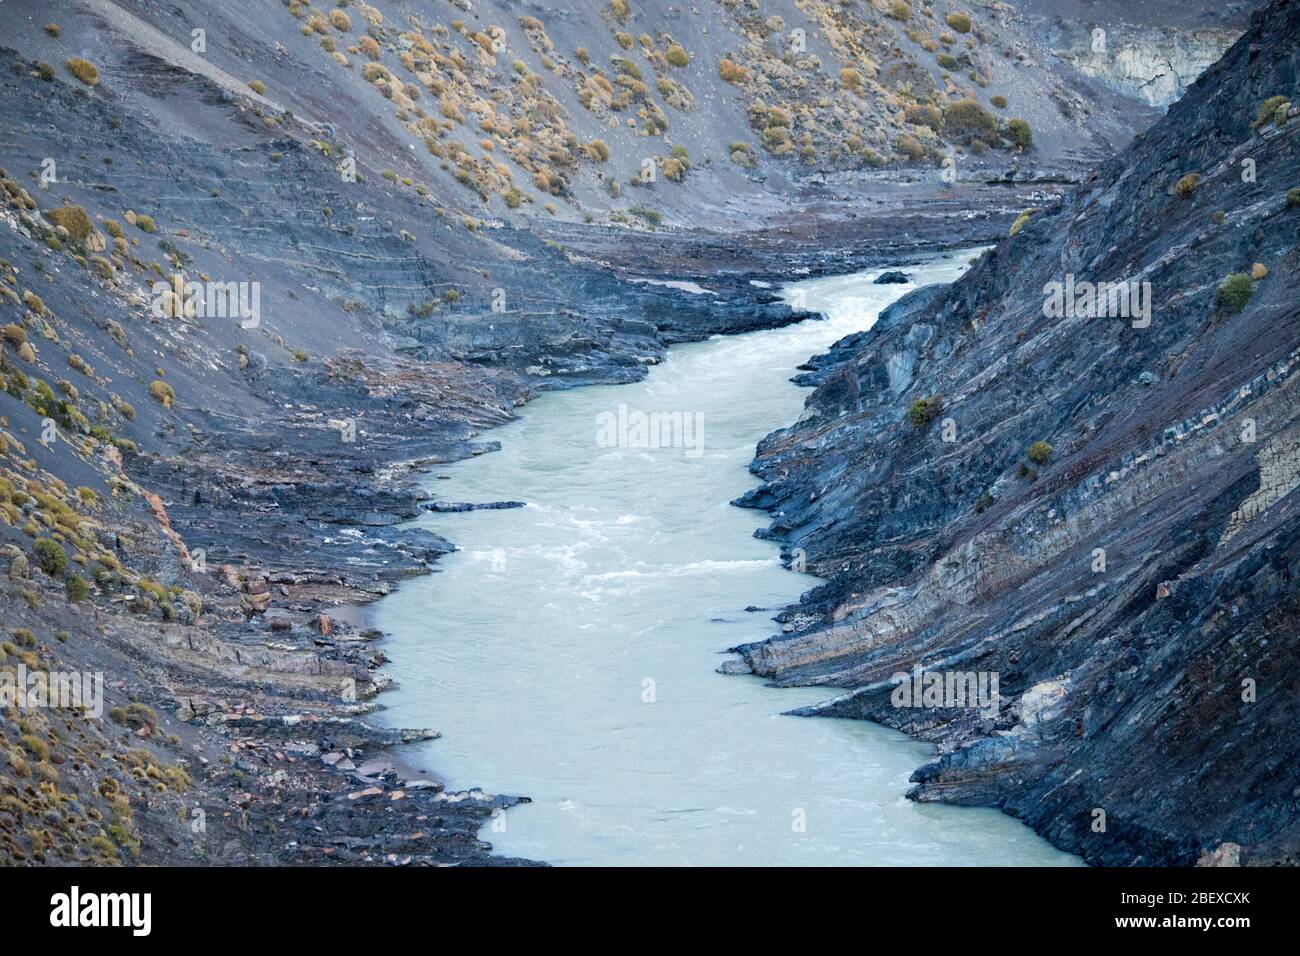 View of the Canyon of the Rio de Las Vueltas, National Park de los Glaciares, Argentina Stock Photo